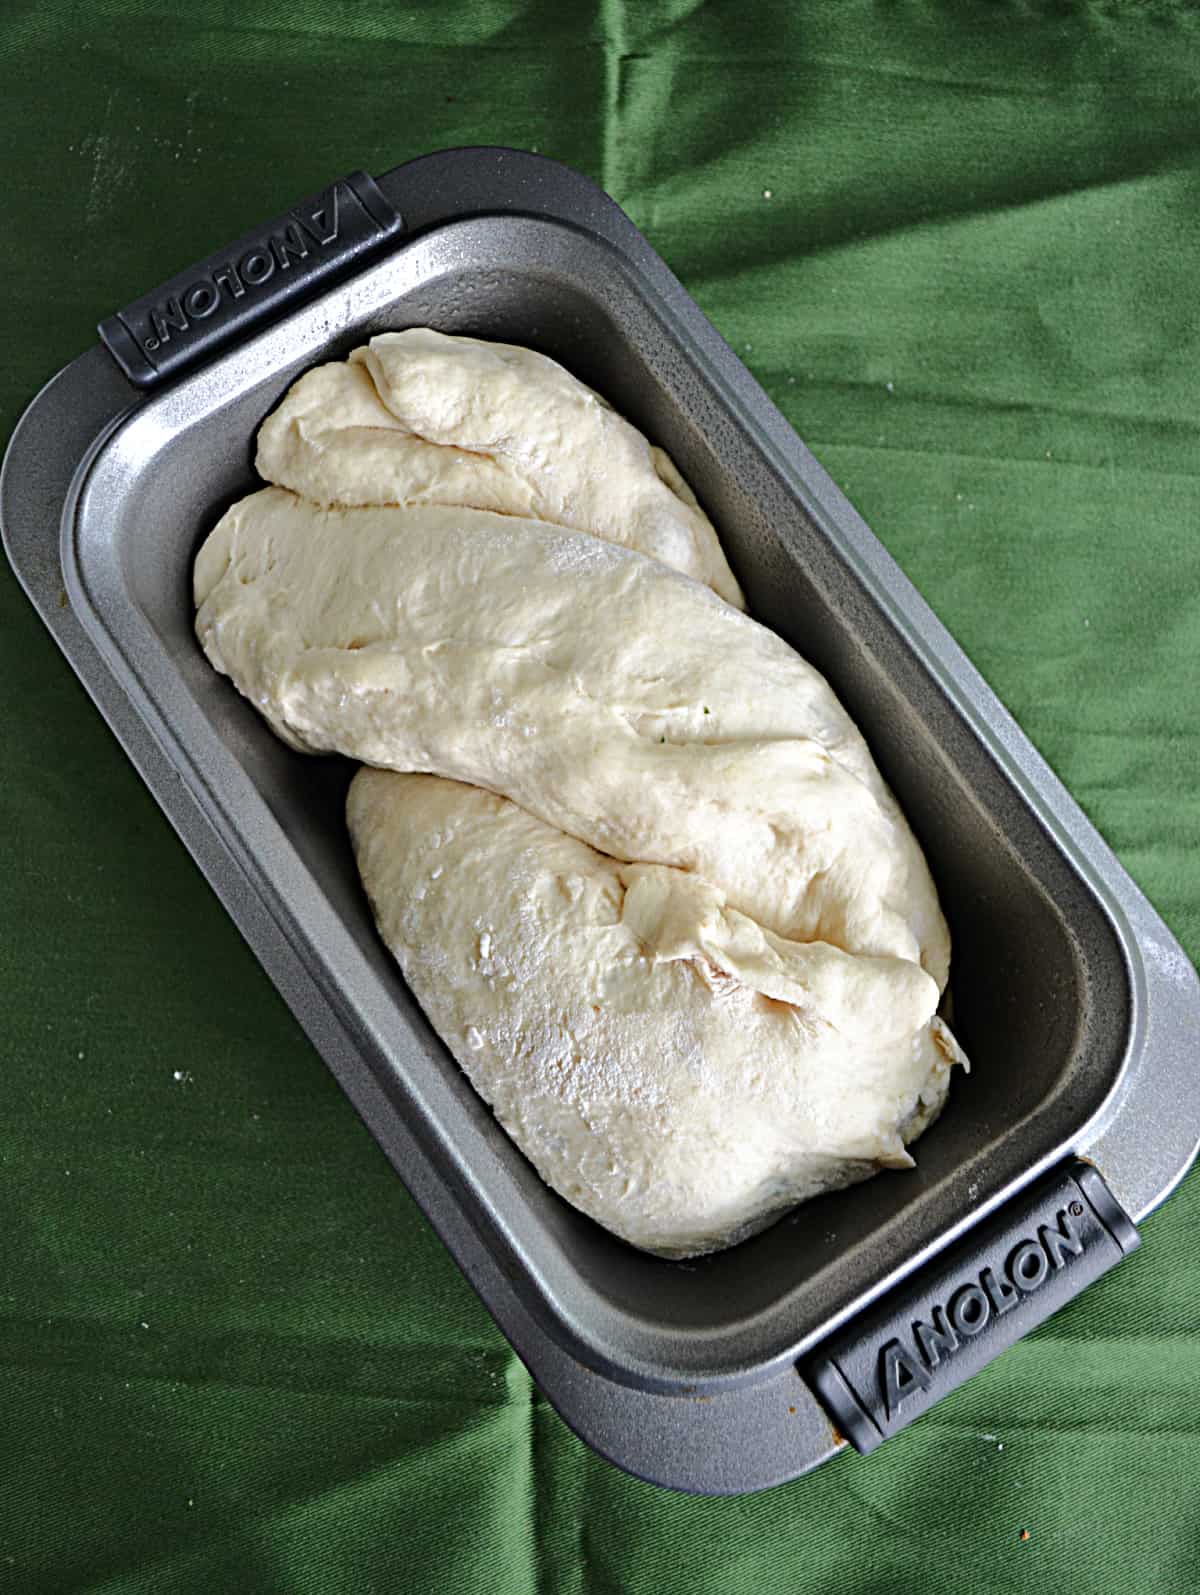 Bread dough twist in a pan.